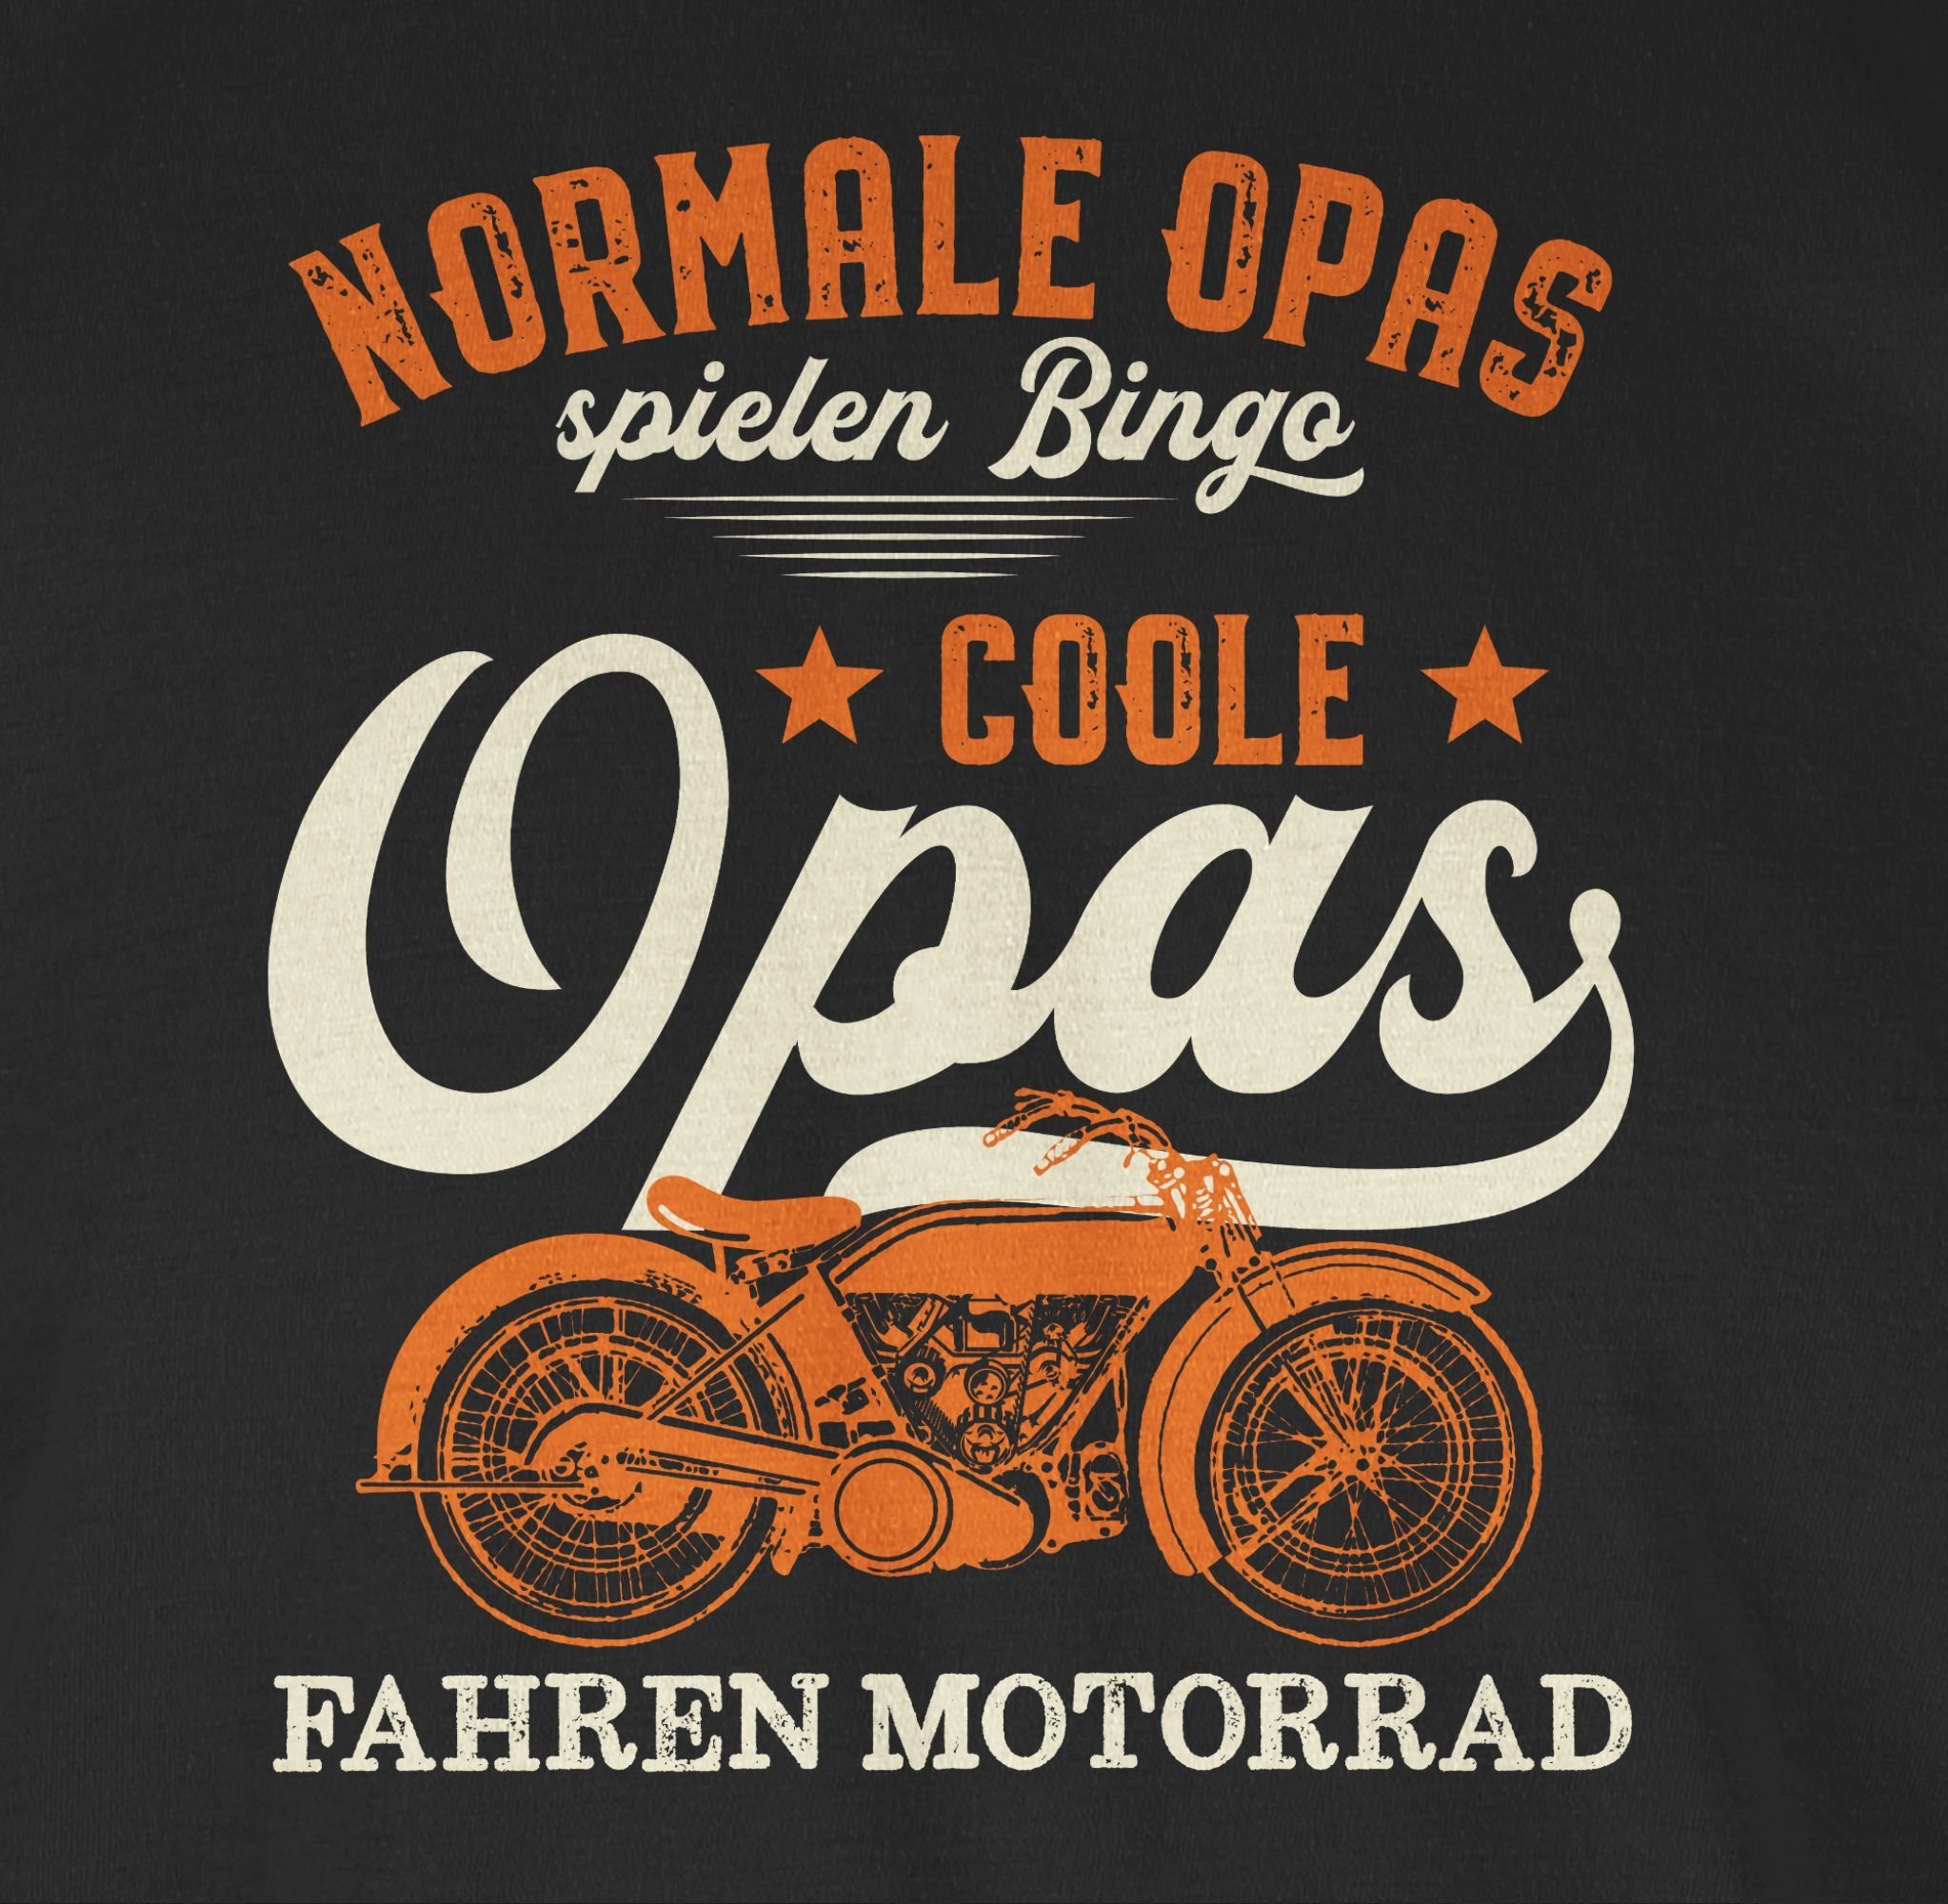 Shirtracer T-Shirt Coole - Normale fahren Opas Opa Bingo Opas - hell 01 Schwarz spielen Geschenke Motorrad